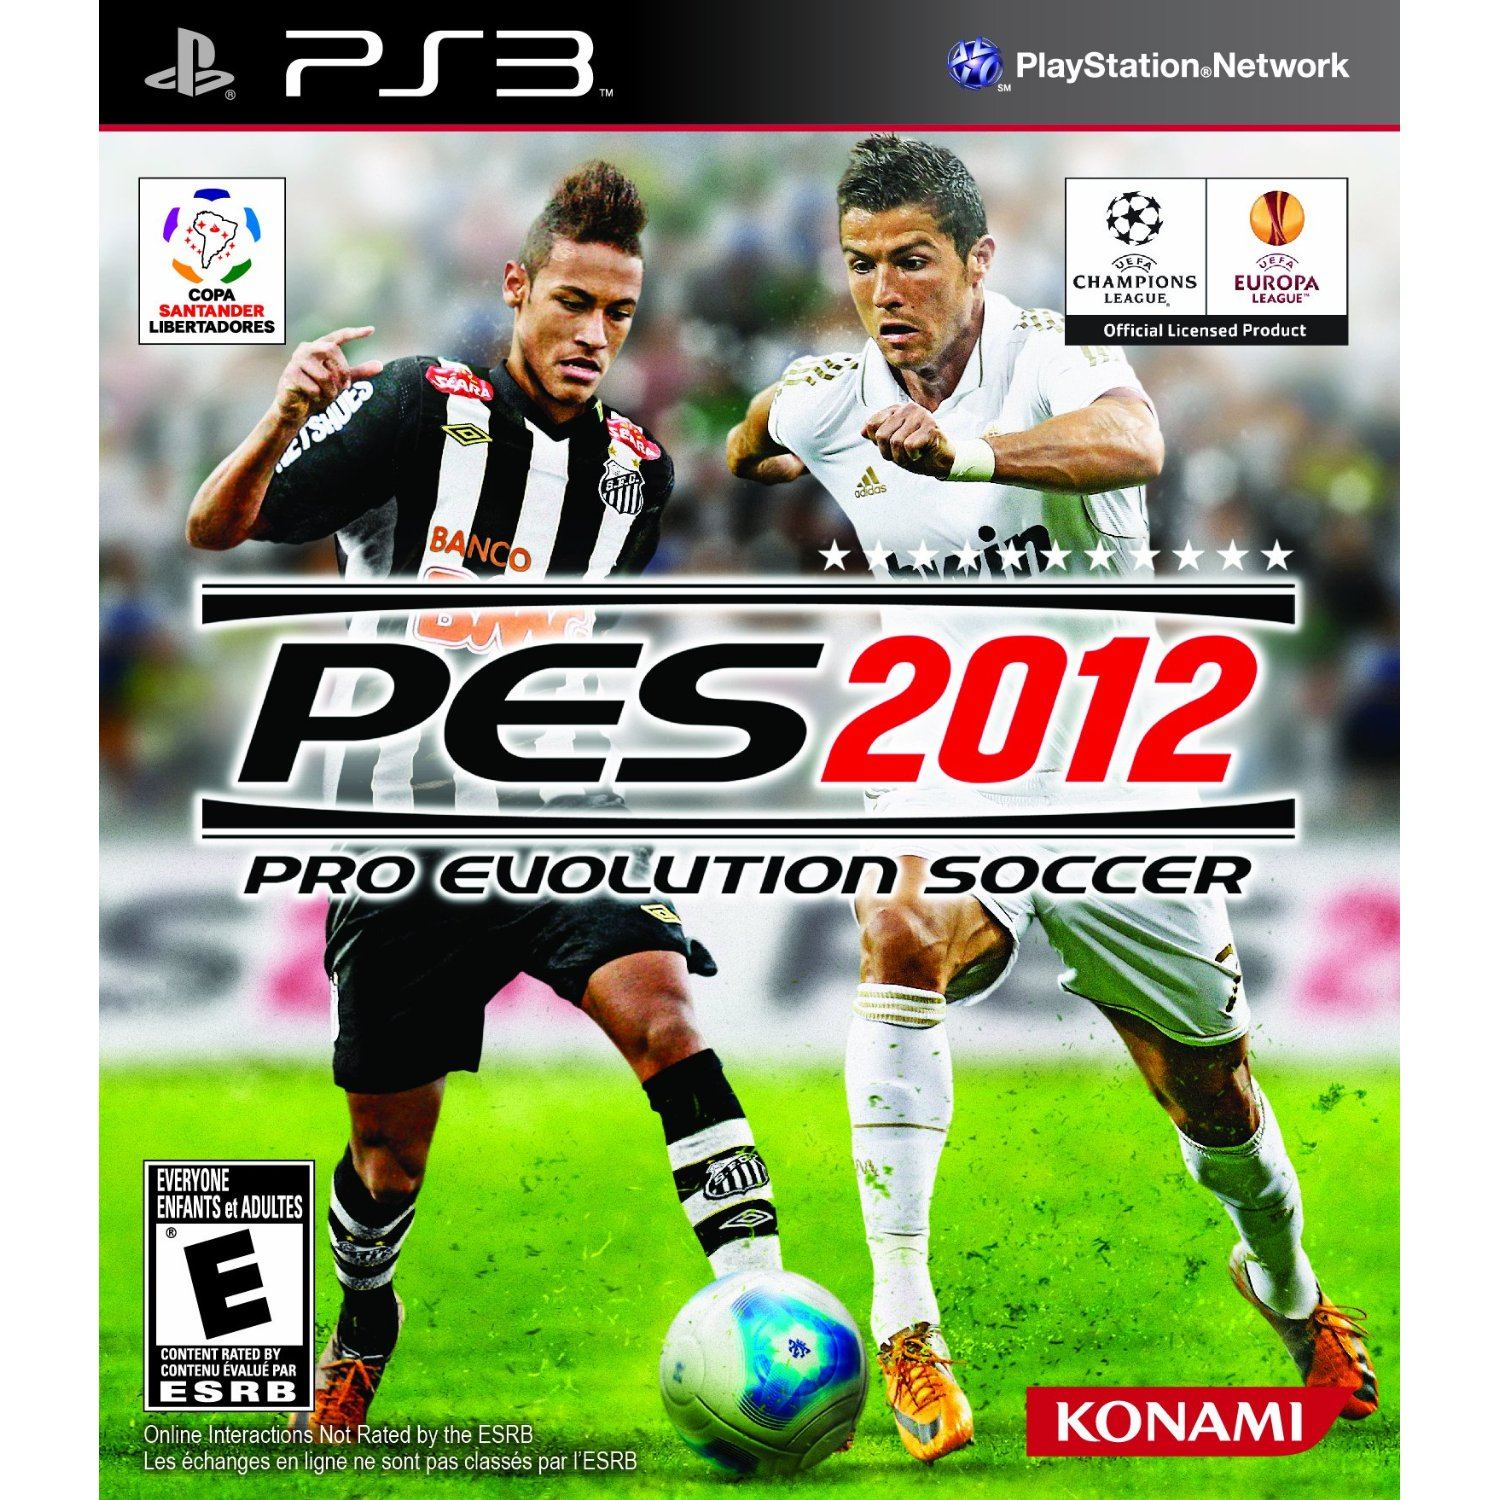 Pro Evolution Soccer 2012 for PlayStation 3